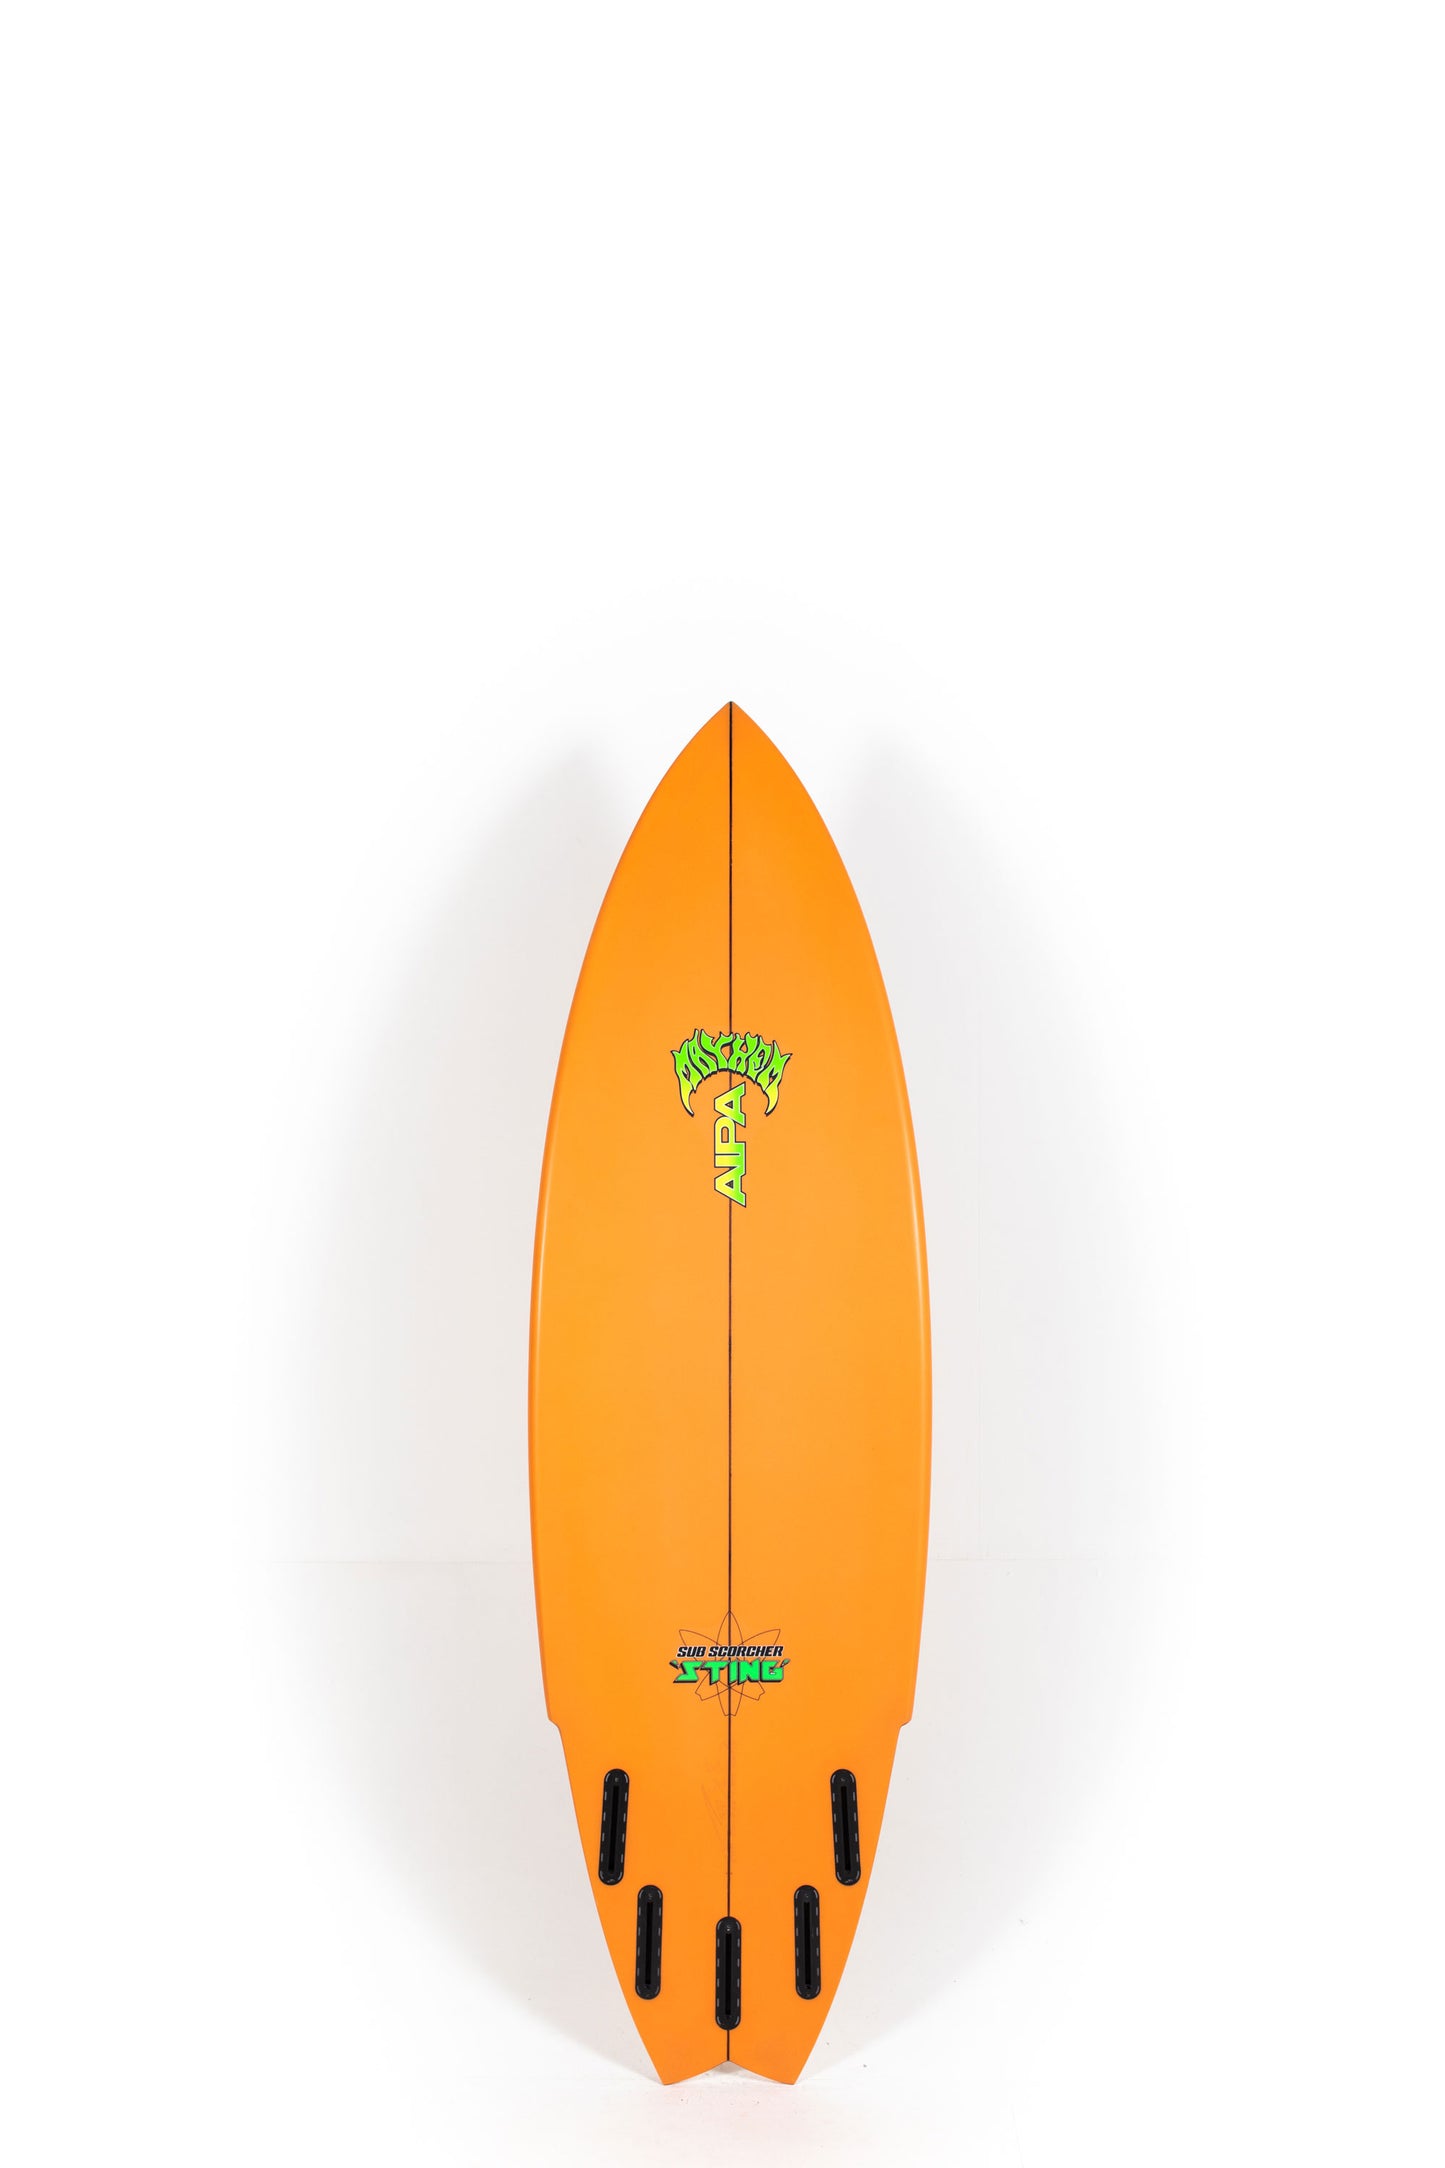 Pukas Surf Shop - Lost Surfboard - SUB SCORCHER STING by Mayhem x Brink - 5’10” x 20" x 2.55" - 31.5L - MA00038